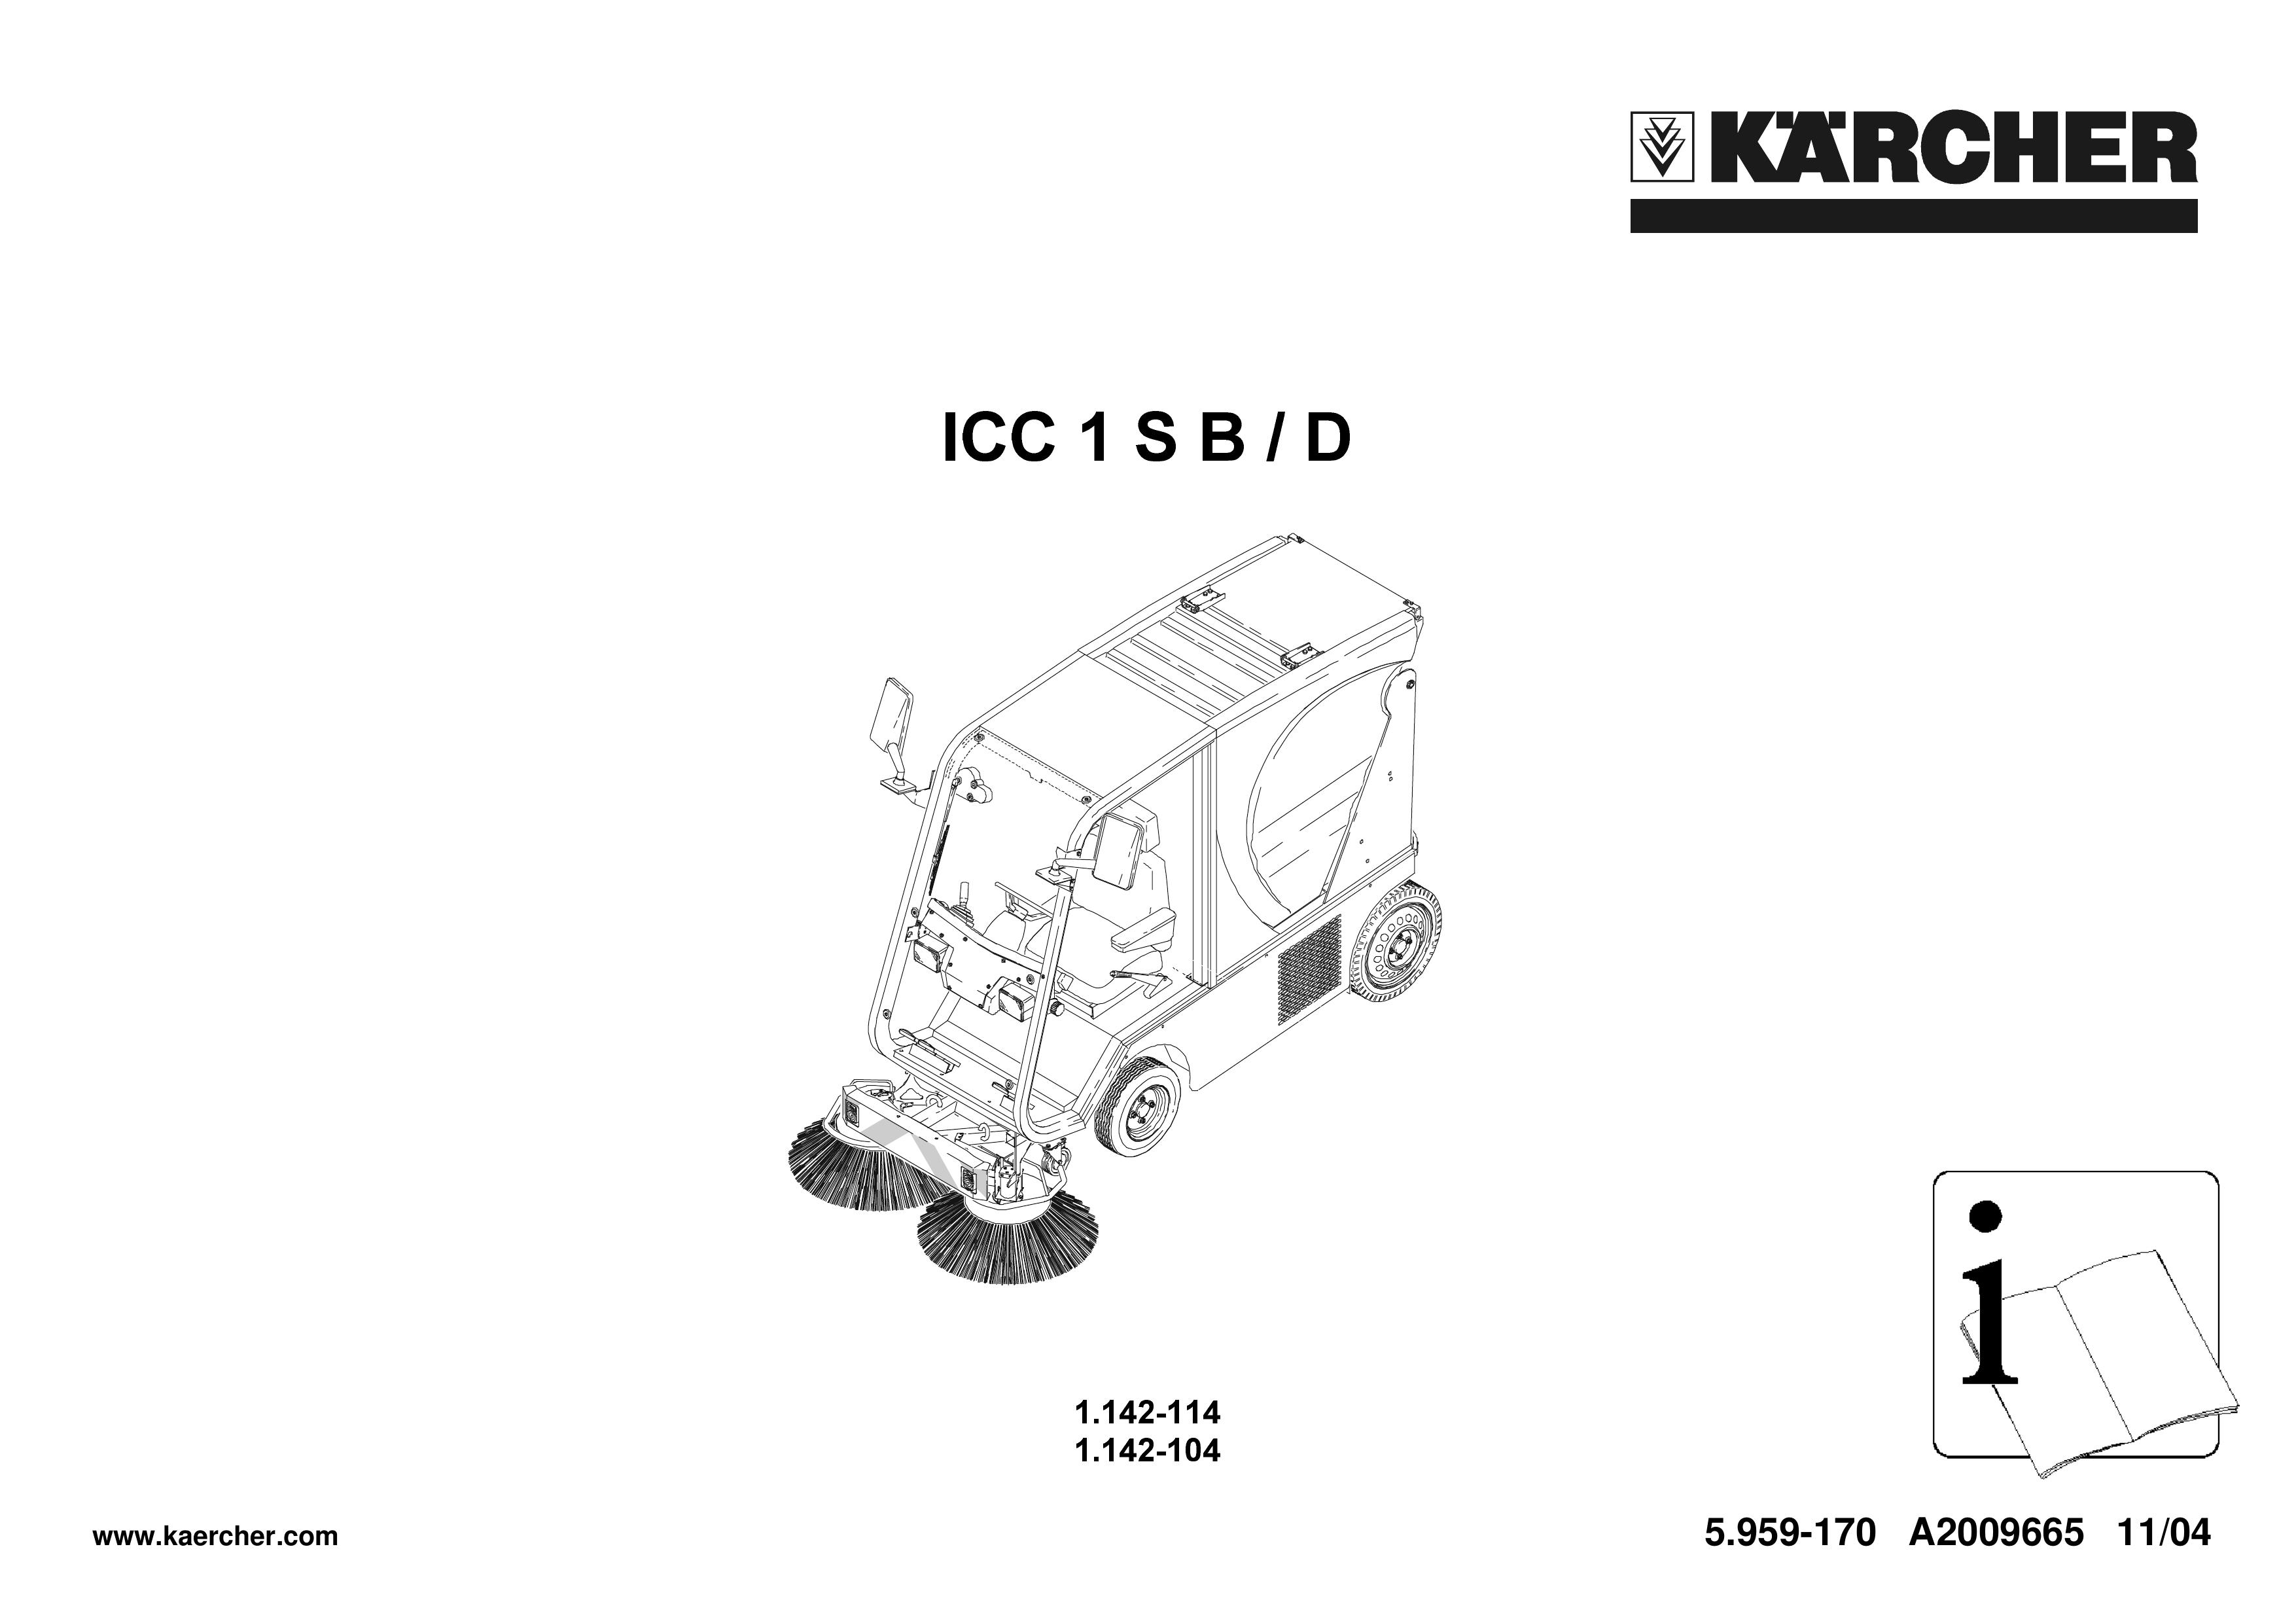 Karcher 1.142-114 Trash Compactor User Manual